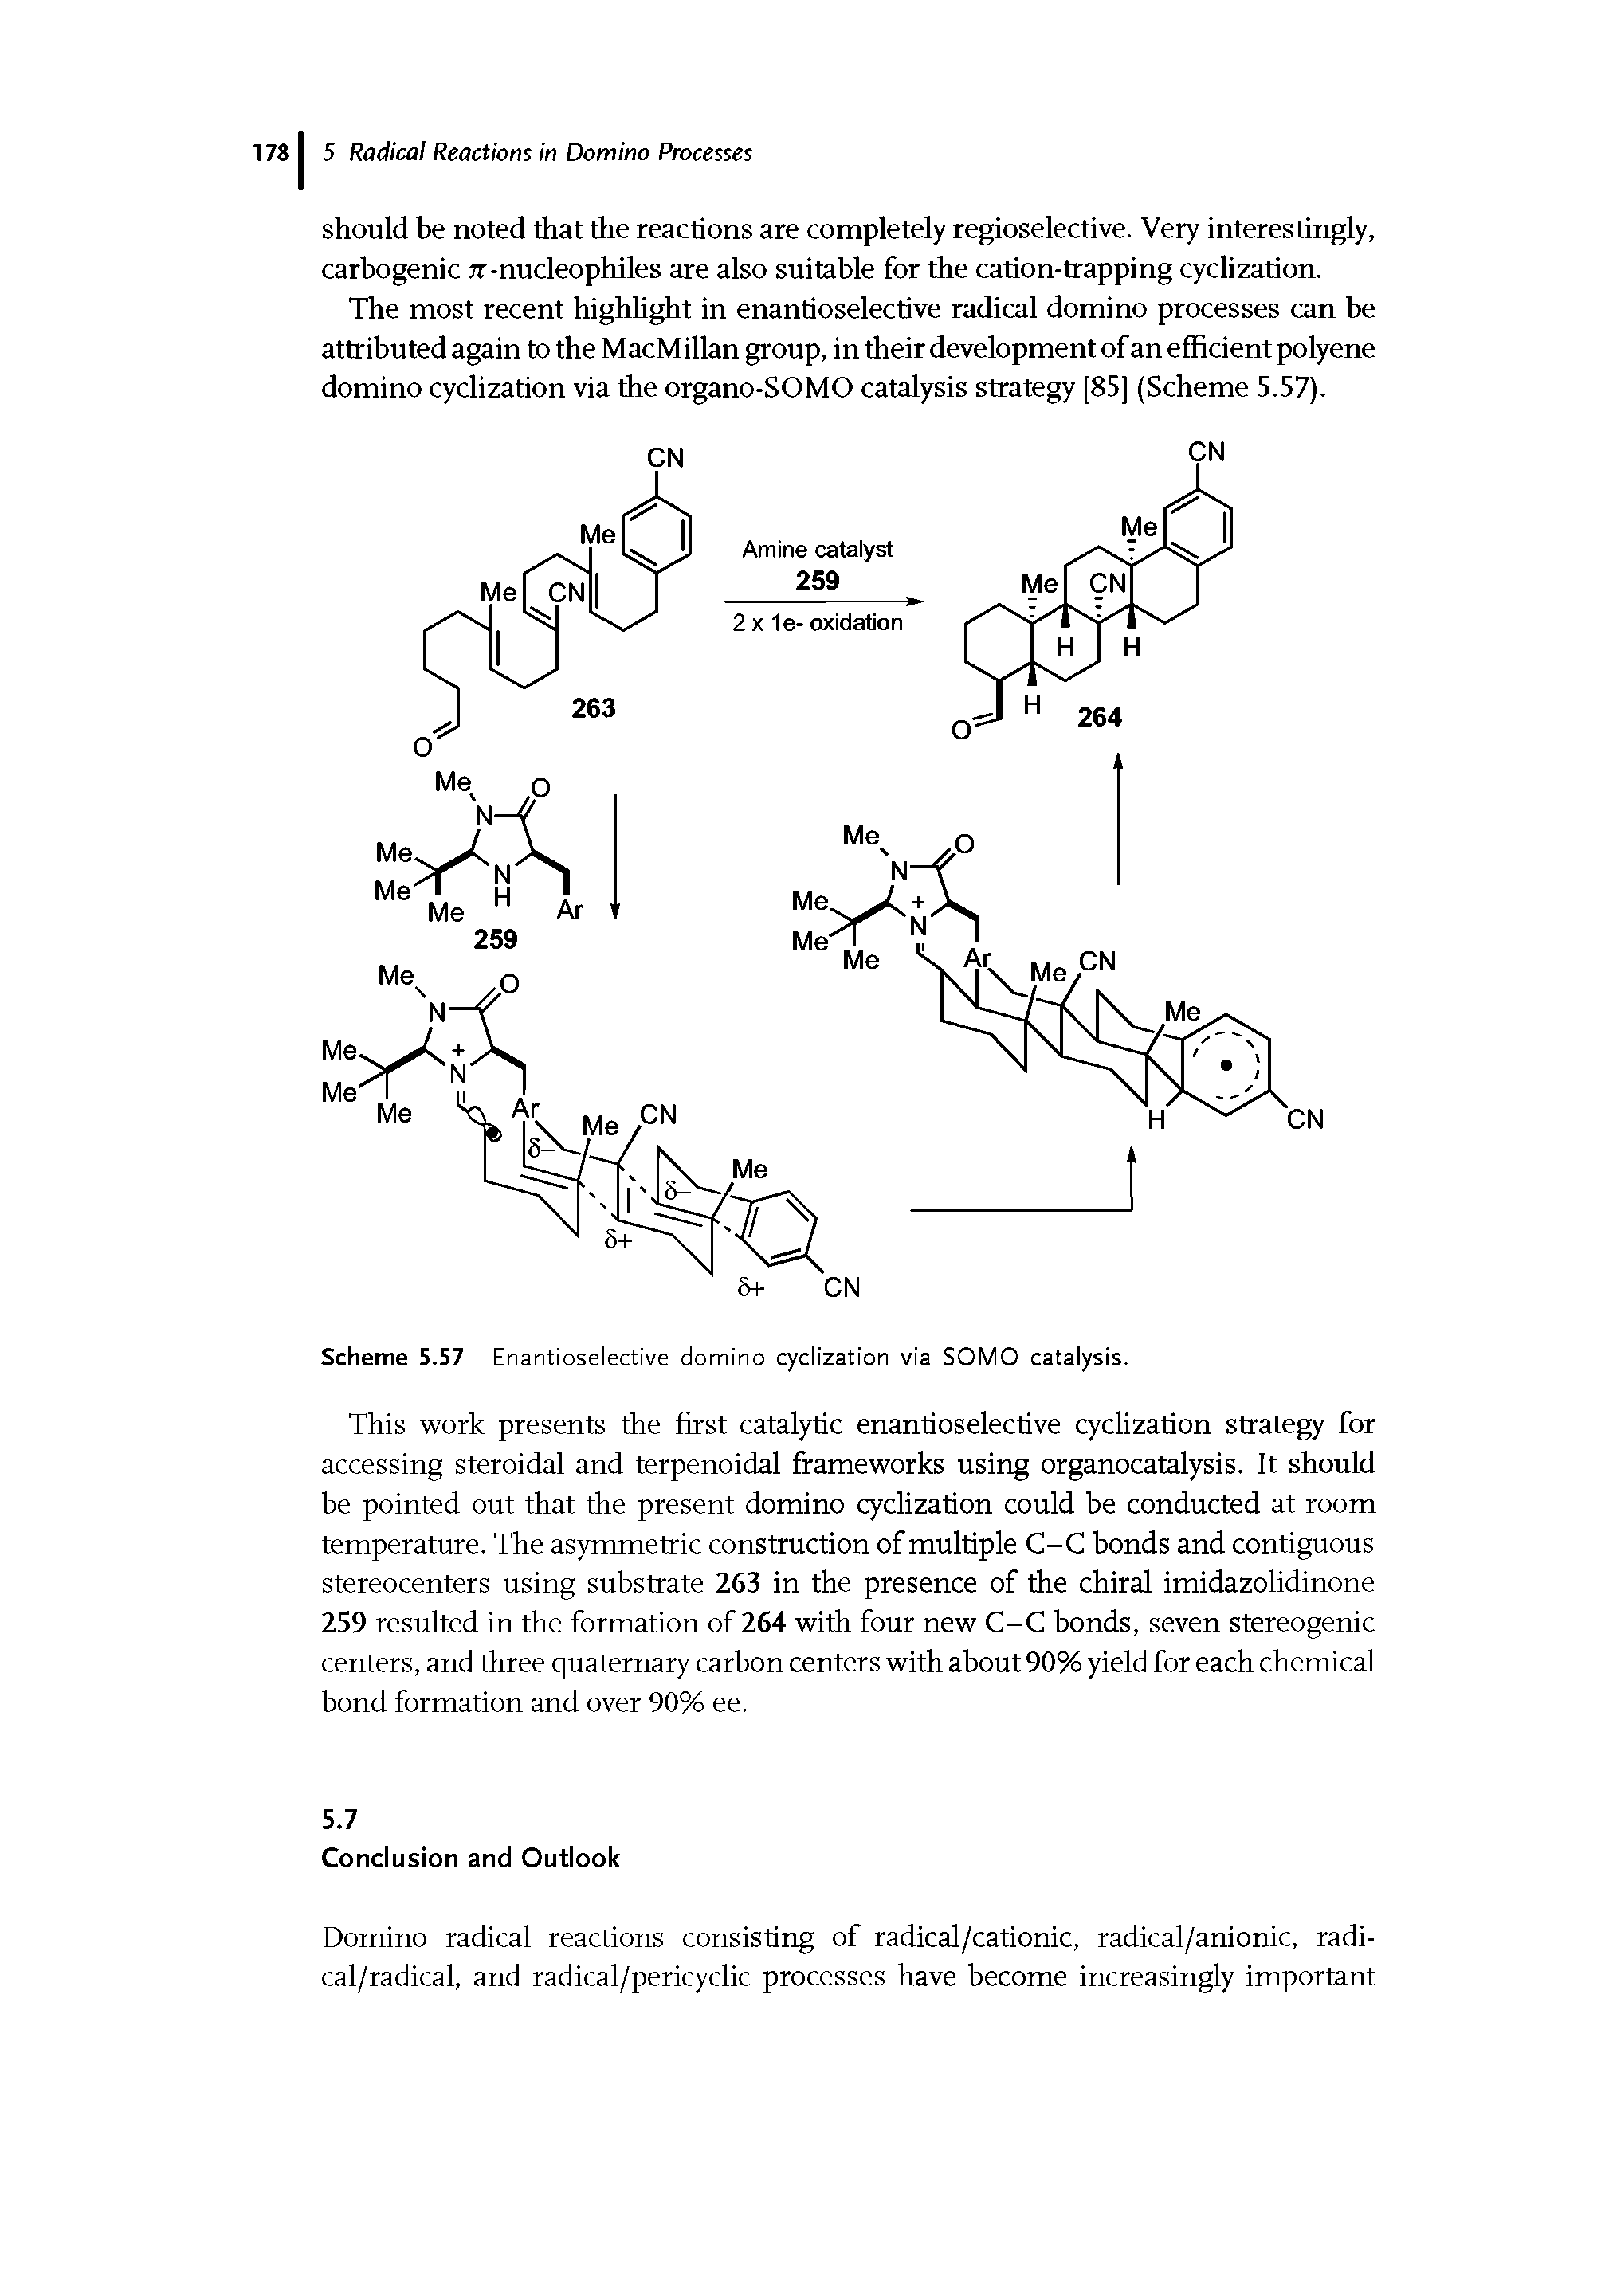 Scheme 5.57 Enantioselective domino cyclization via SOMO catalysis.